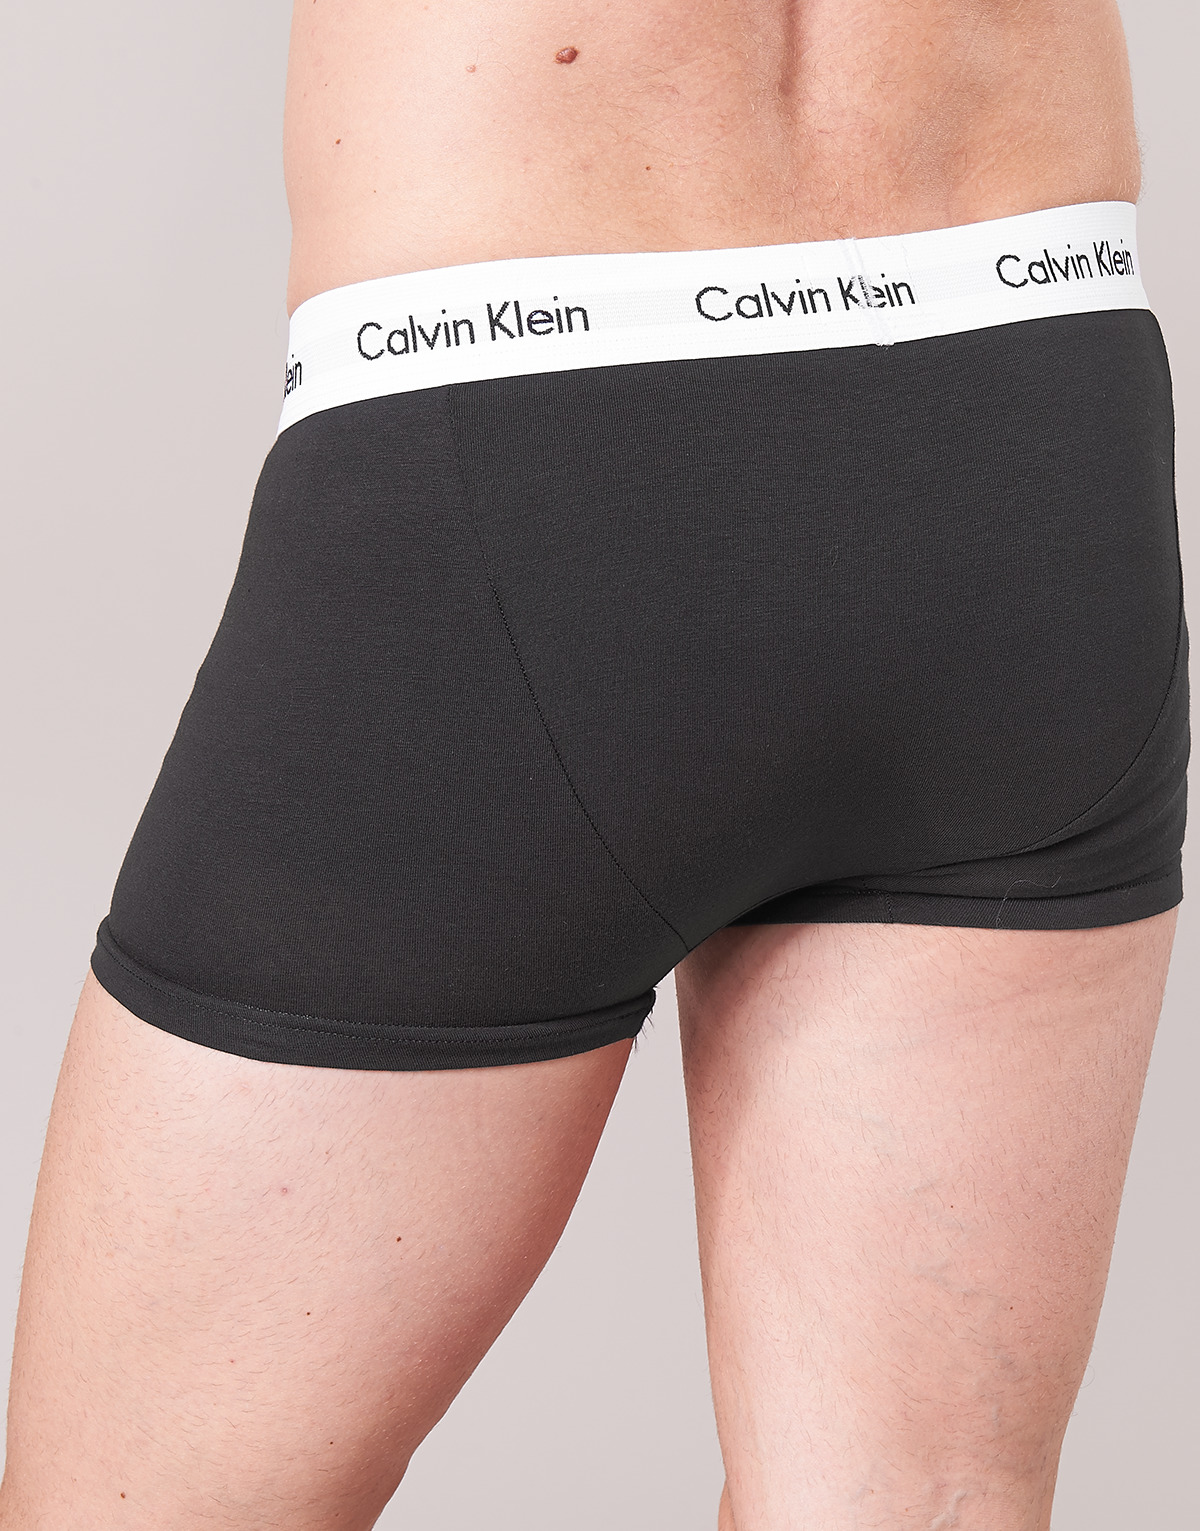 Calvin Klein Jeans Noir / Blanc / Gris chiné COTTON STRECH LOW RISE TRUNK X 3 1KOjQrOH